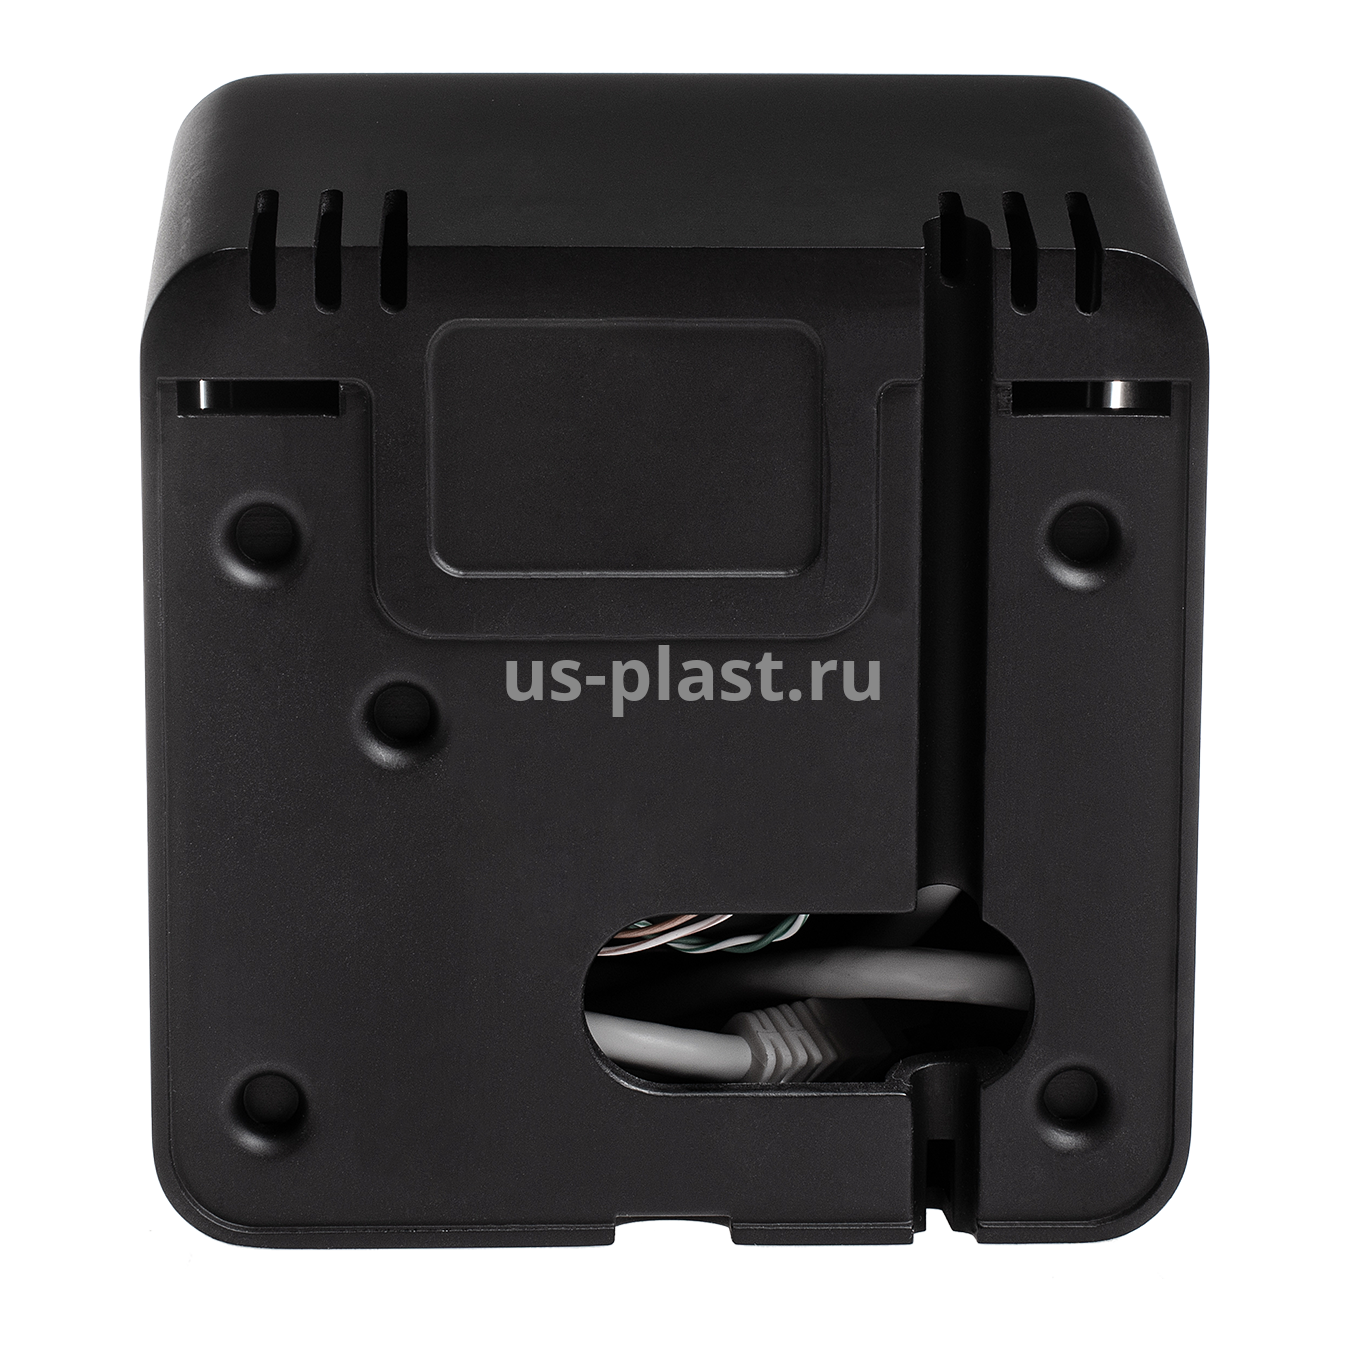 BioSmart PALMJET BOX, биометрический считыватель вен ладони и RFID-карт. Фото N4